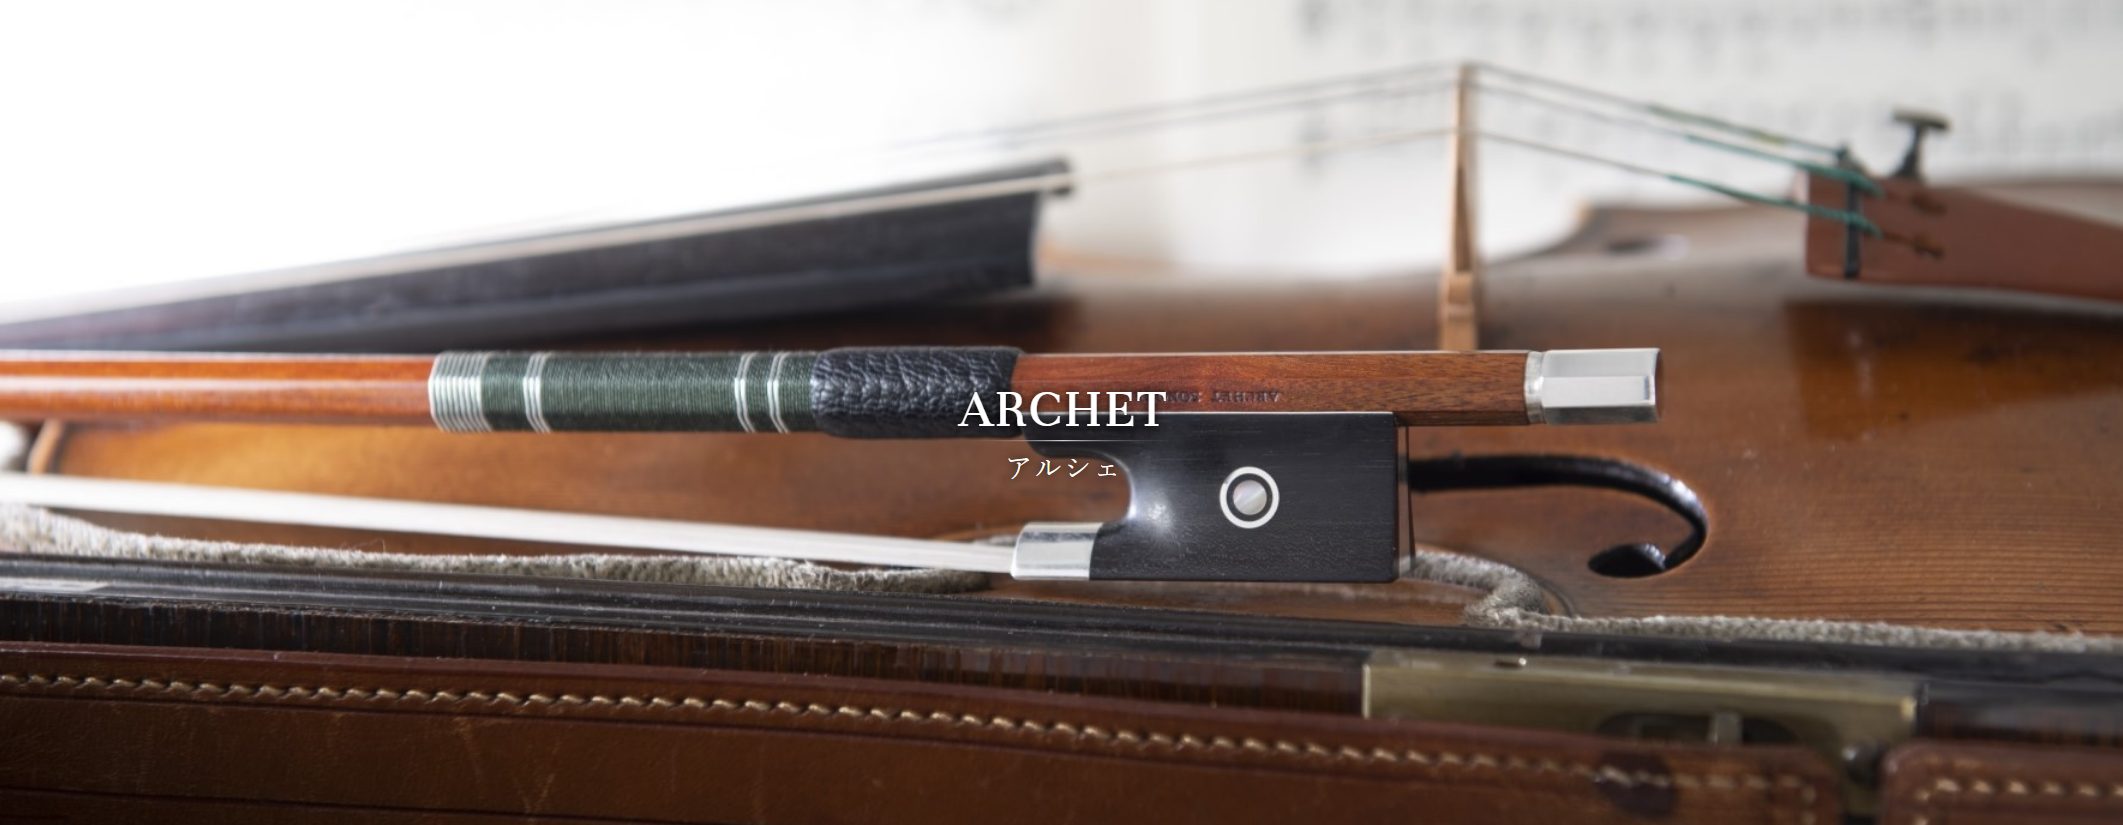 【人気最新品】Archet Plumage ☆☆ 4/4 バイオリン用 弓 中古 S6488354 バイオリン